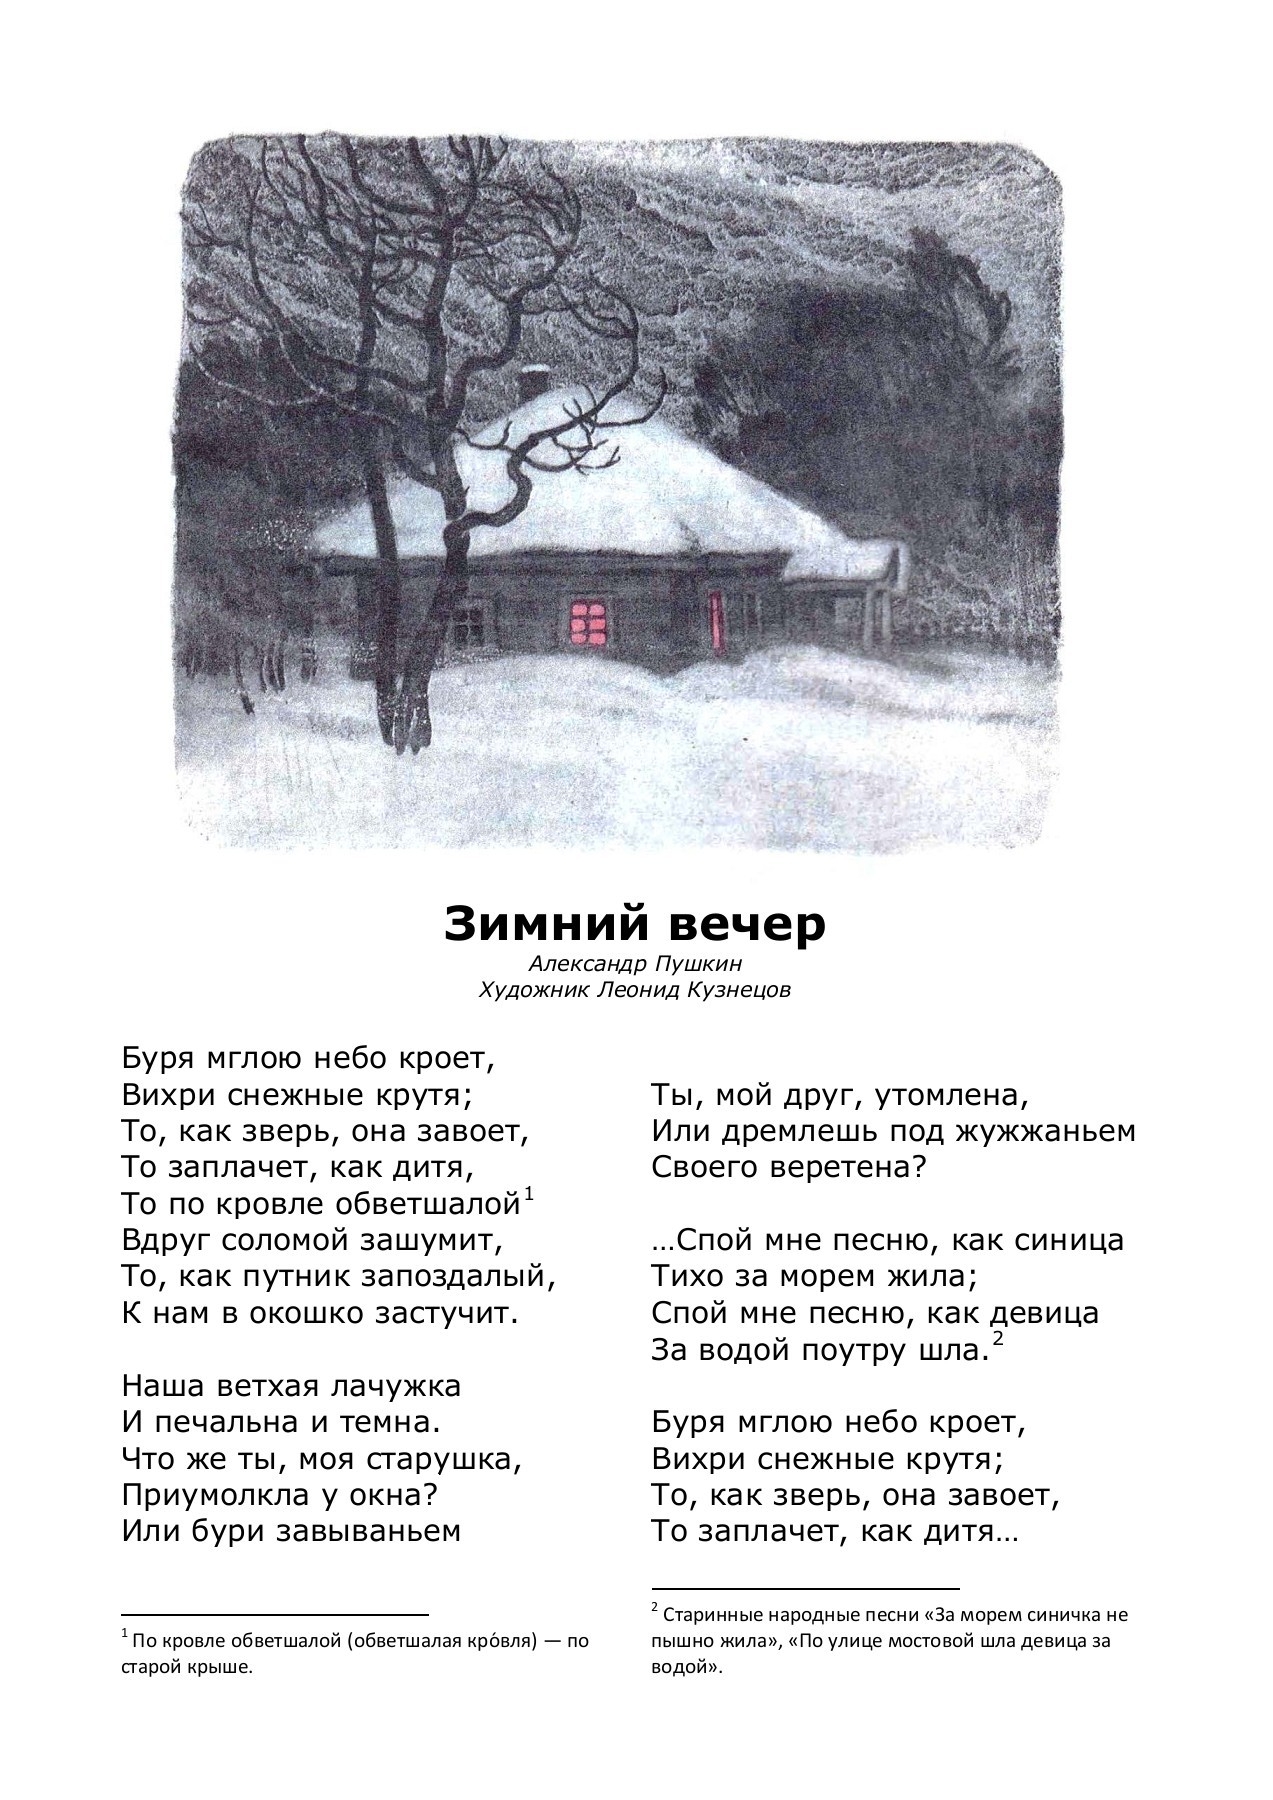 Пушкин буря мглою. Зимний вечер Пушкин стихотворение.